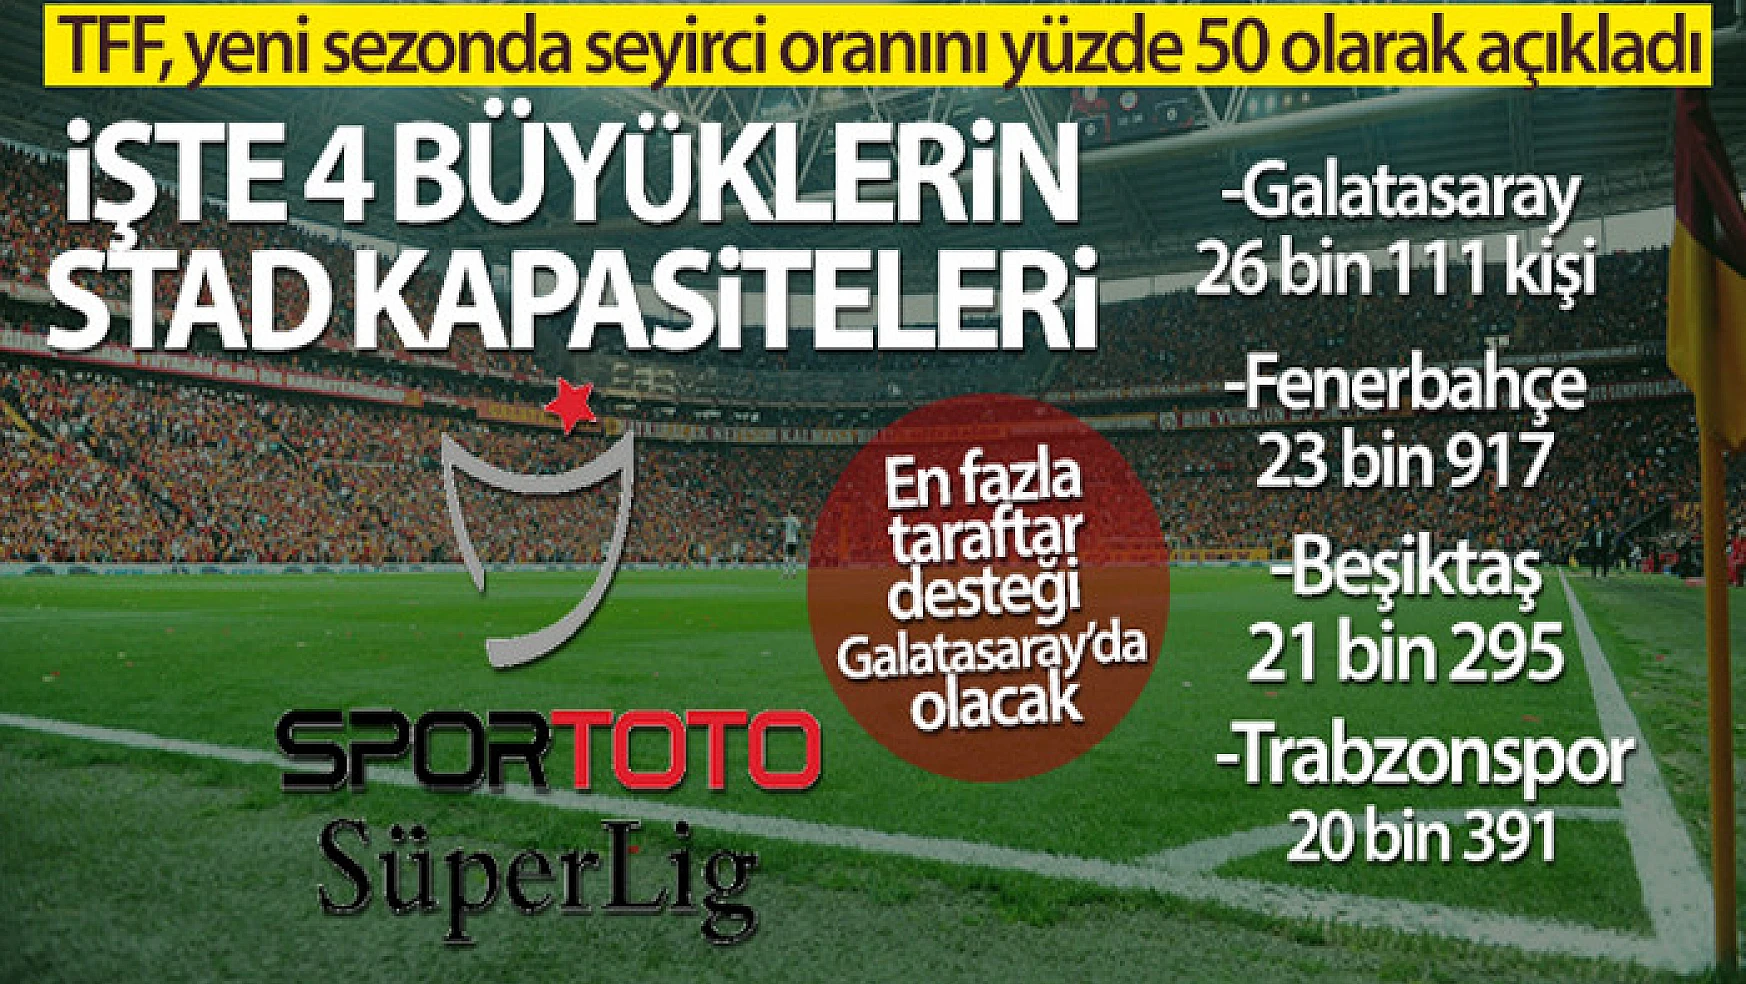 Yeni sezonda en fazla taraftar desteği Galatasaray'da olacak